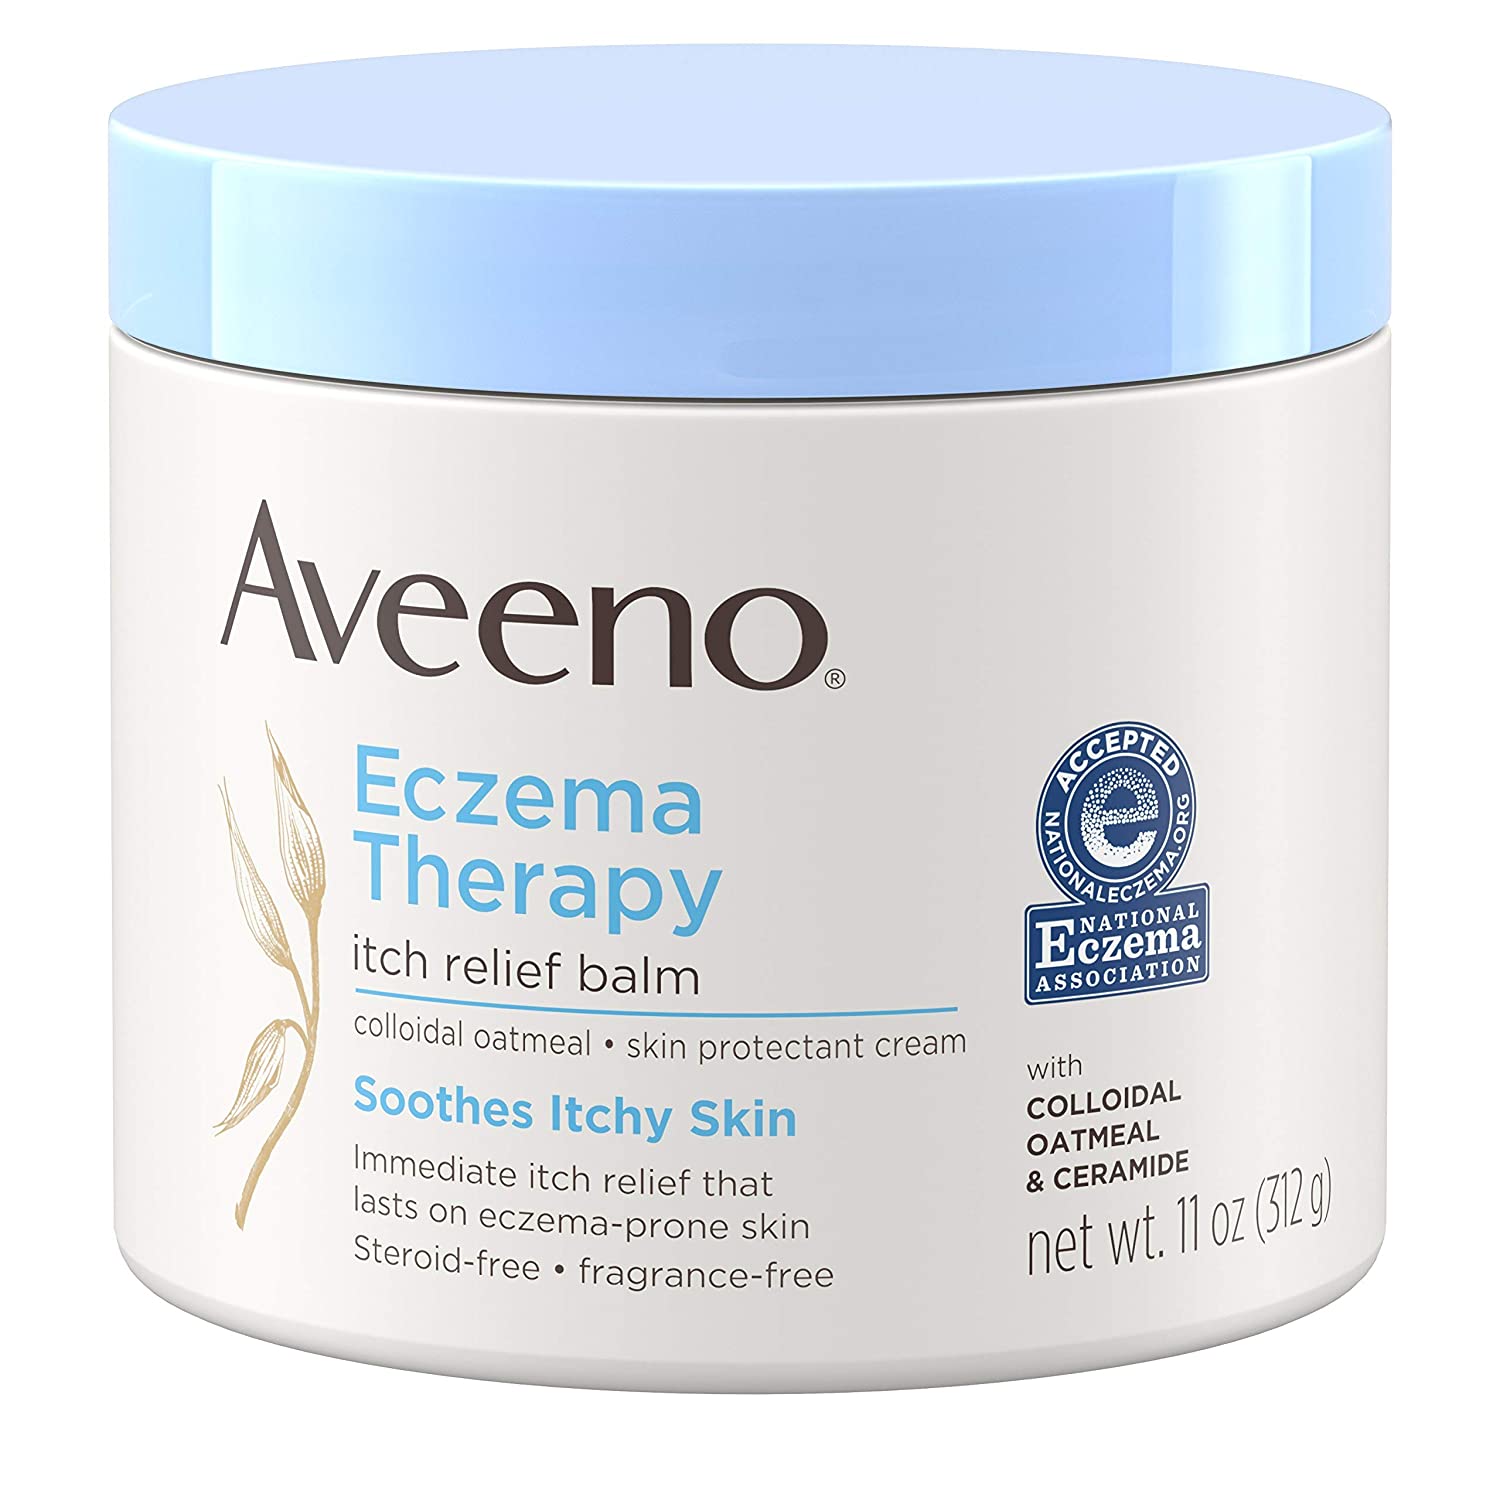 Las mejores cremas y tratamientos para el eczema en la piel